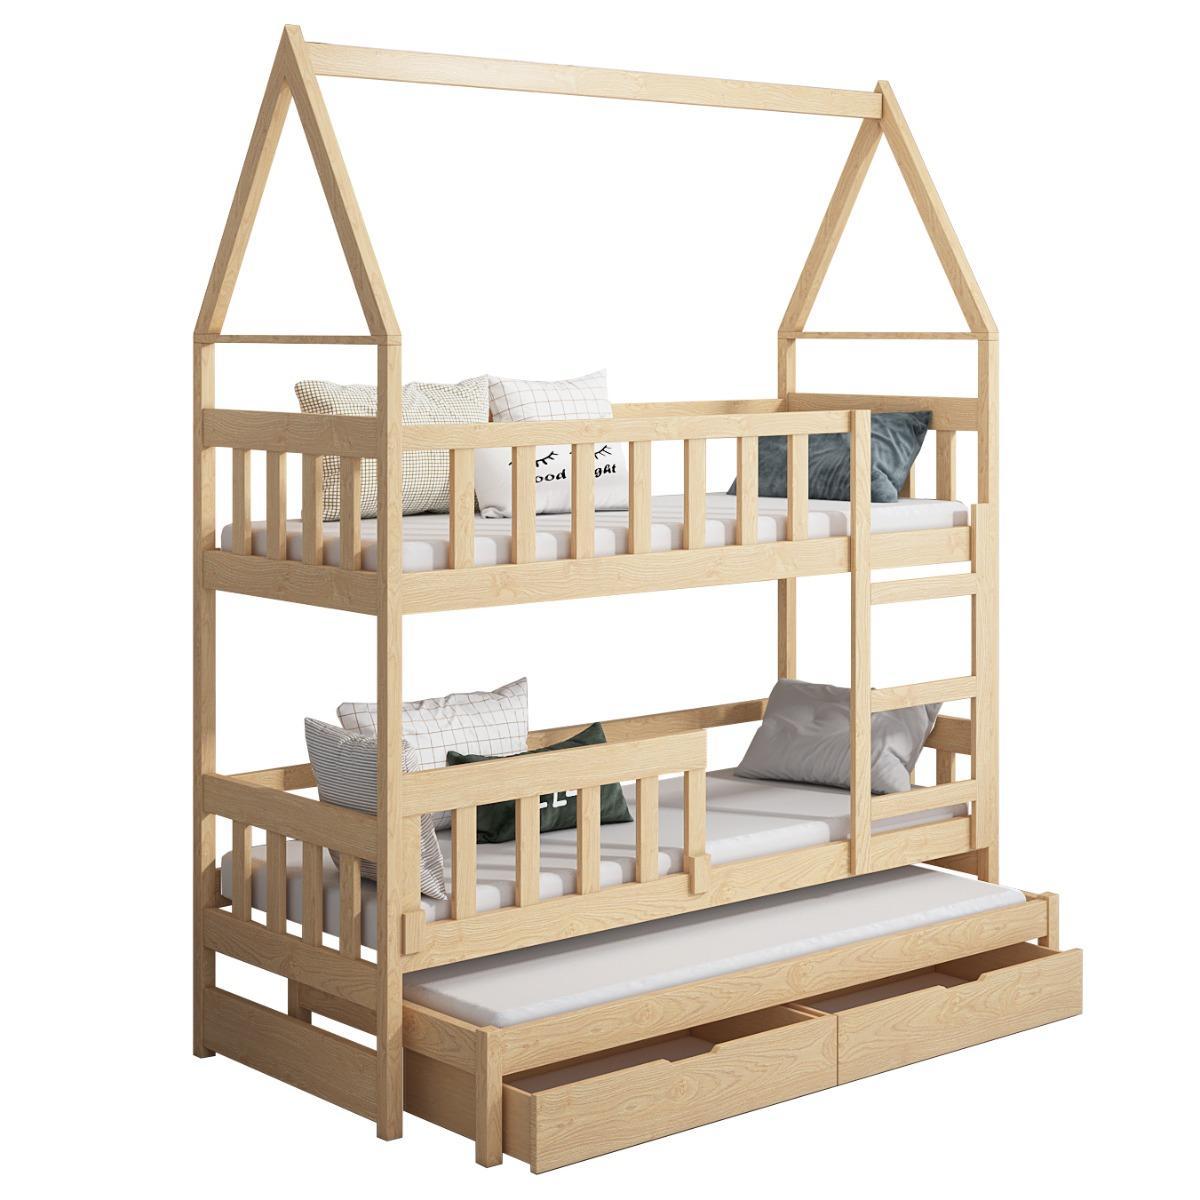 Łóżko piętrowe DOMEK drewno naturalne miejsce do spania dla 3 osób + materace lateksowe 180x75 cm + barierka dolna do pokoju dziecka 5 Full Screen